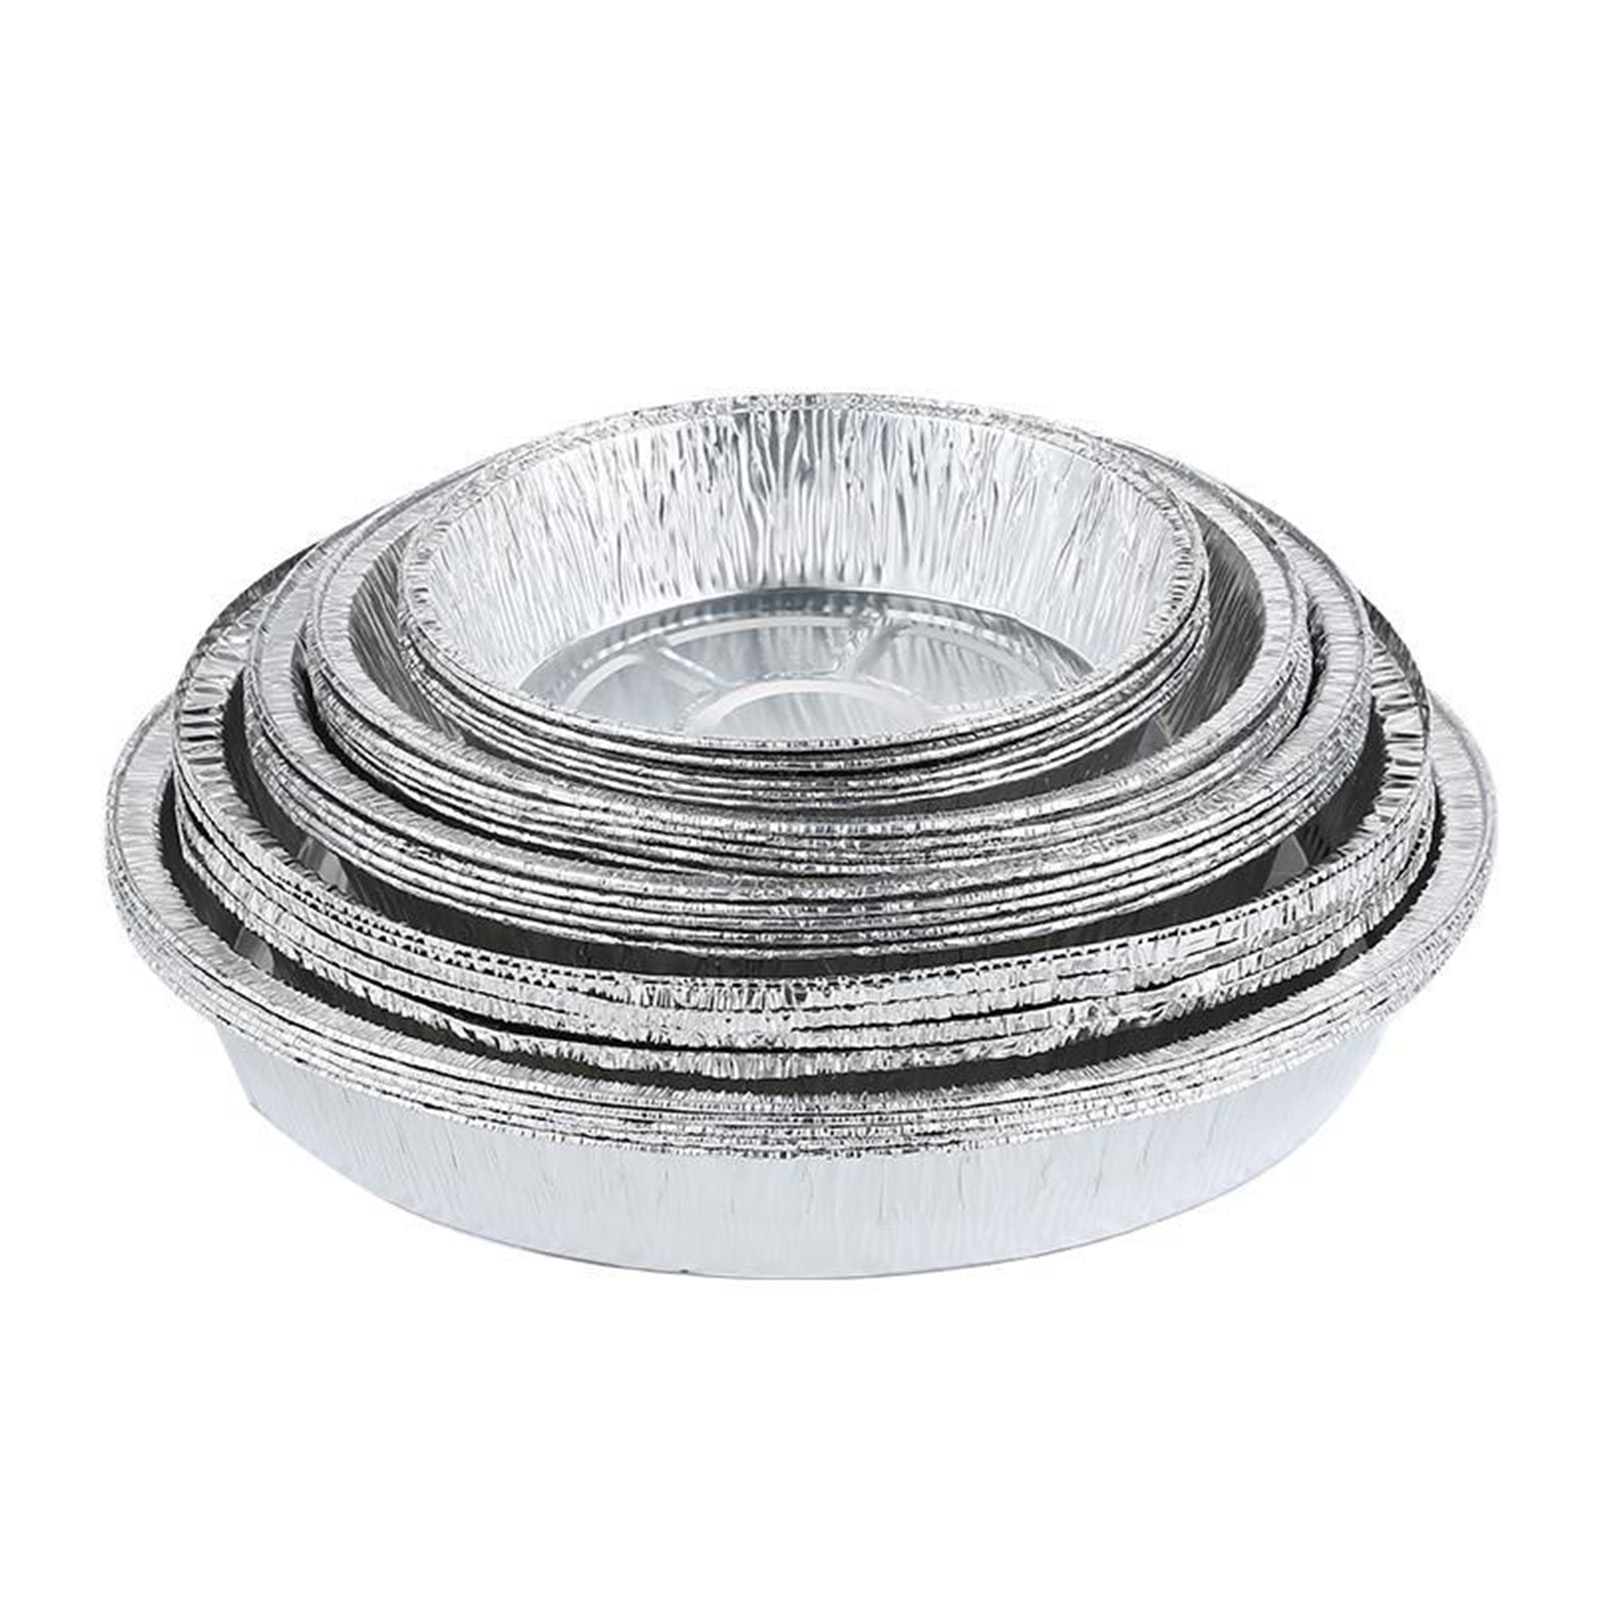 6 pouces / 7 pouces ronds en aluminium en aluminium Pan de casseroles Contineurs alimentaires Plateaux de papier d'aluminium pour la cuisson / stockage / r￩chauffage / pr￩paration de repas